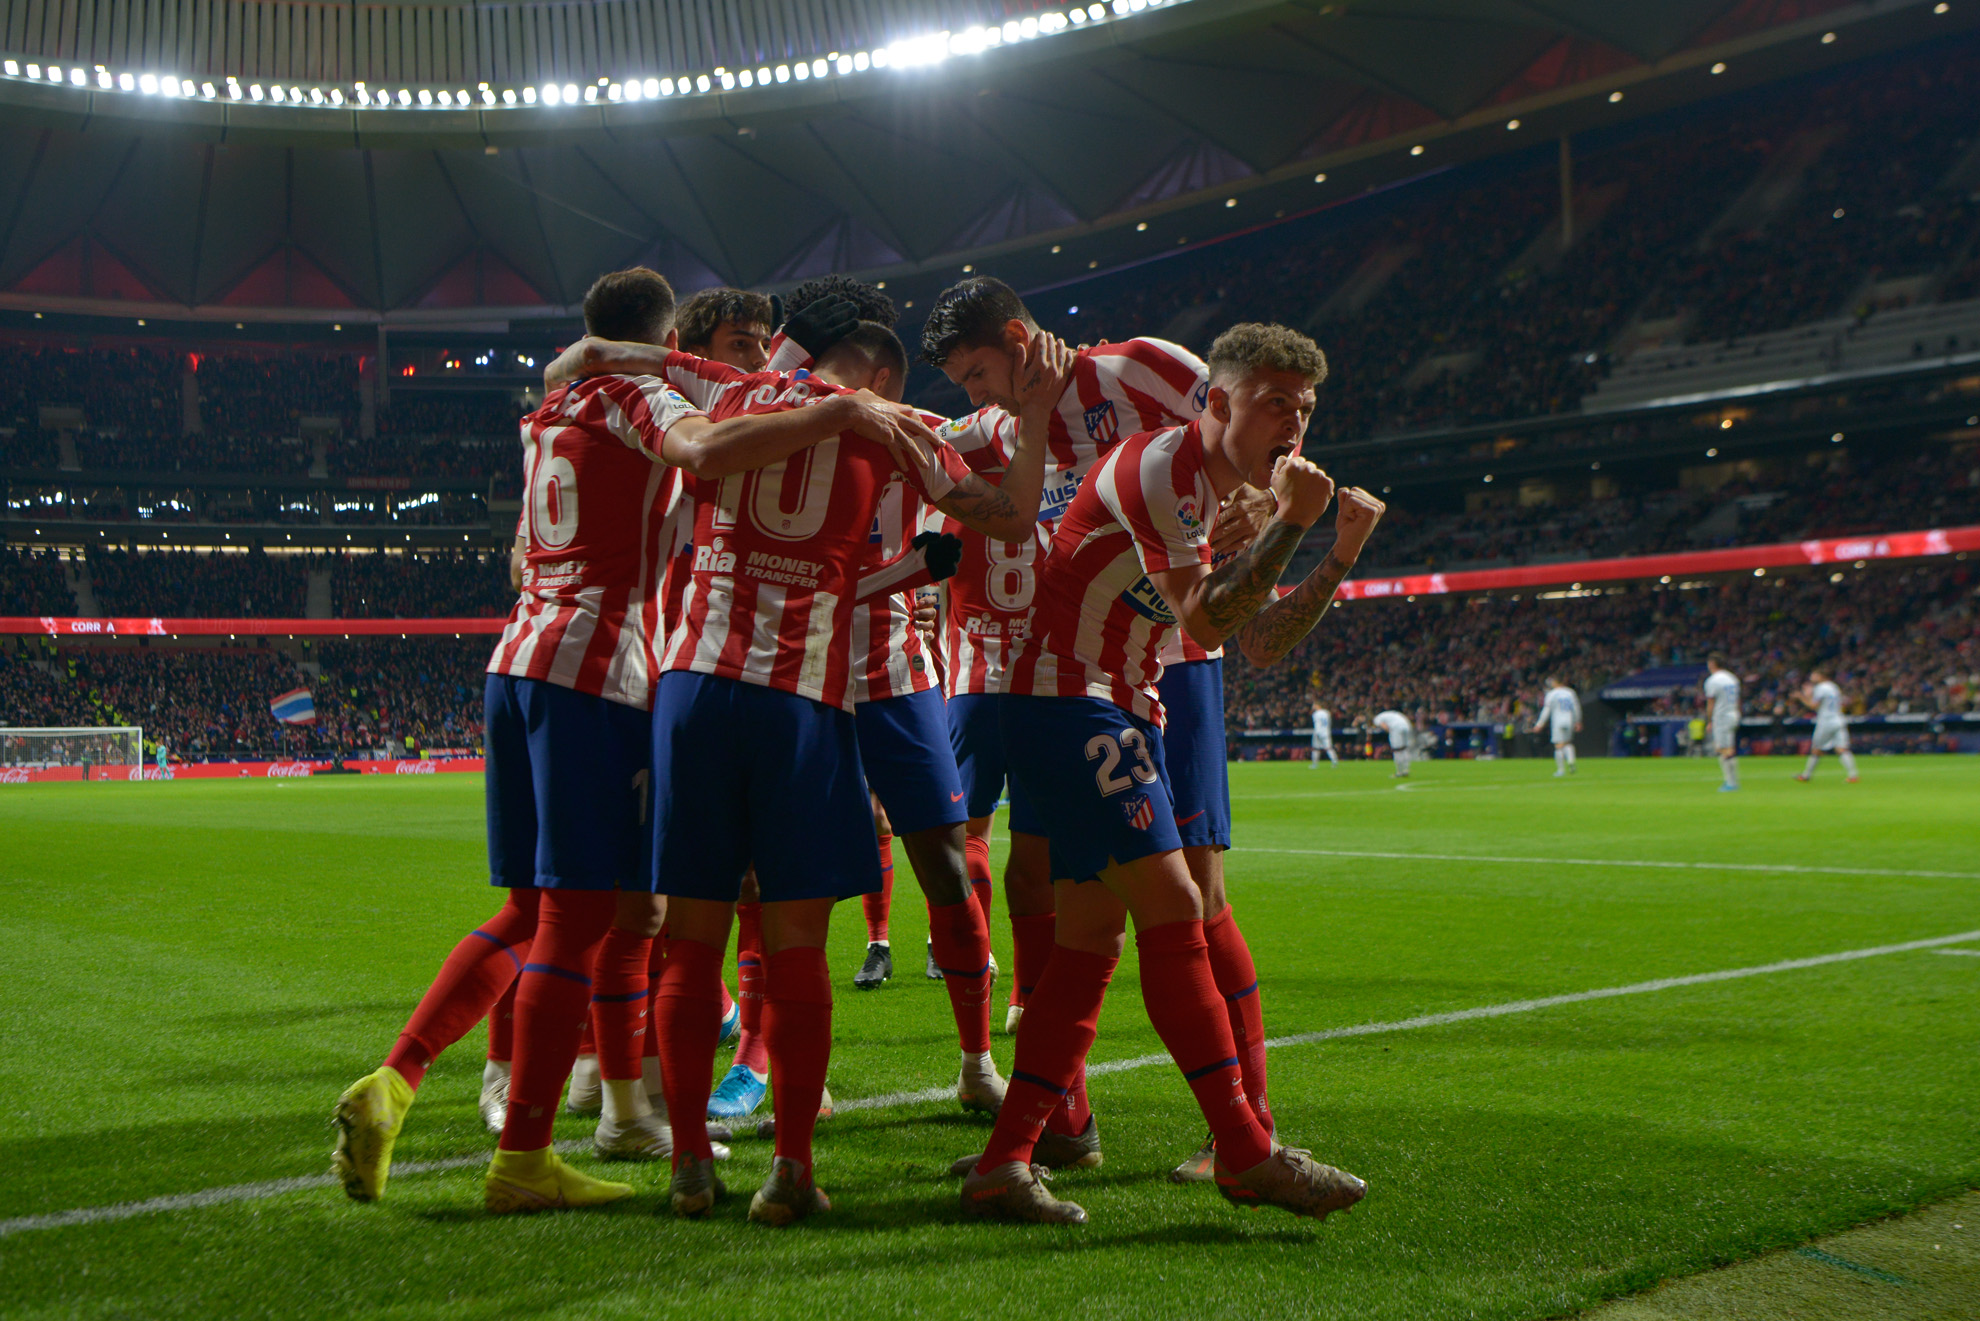 Los Jugadores del Cholo Simeone festejan el primer gol del partido entre el Atlético de Madrid vs Levante.